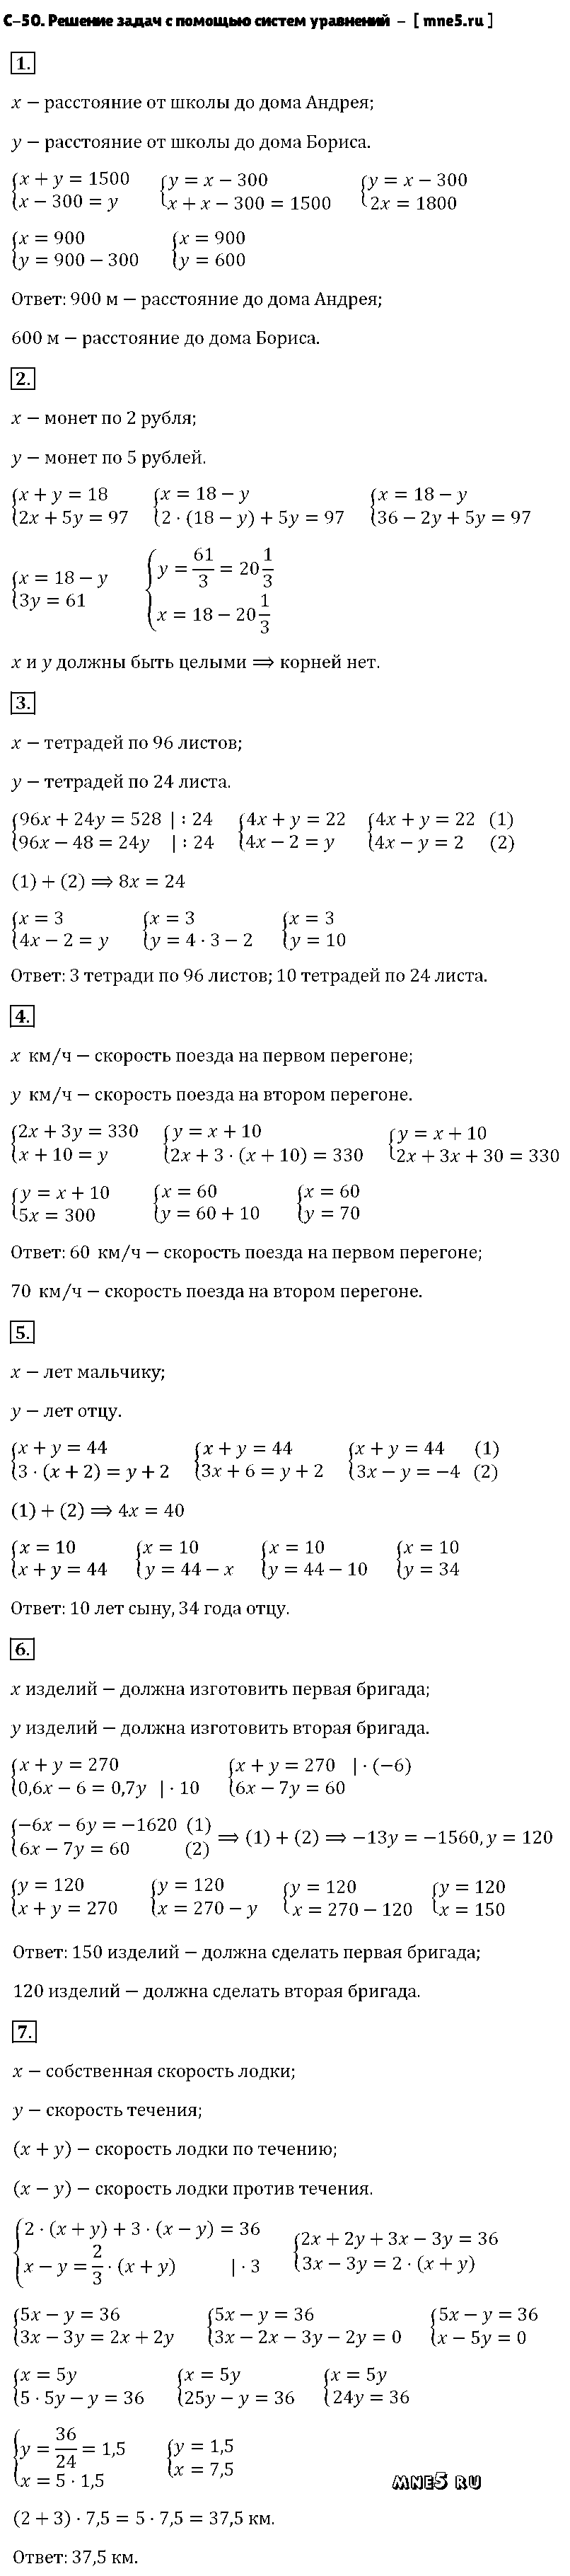 ГДЗ Алгебра 7 класс - С-50. Решение задач с помощью систем уравнений